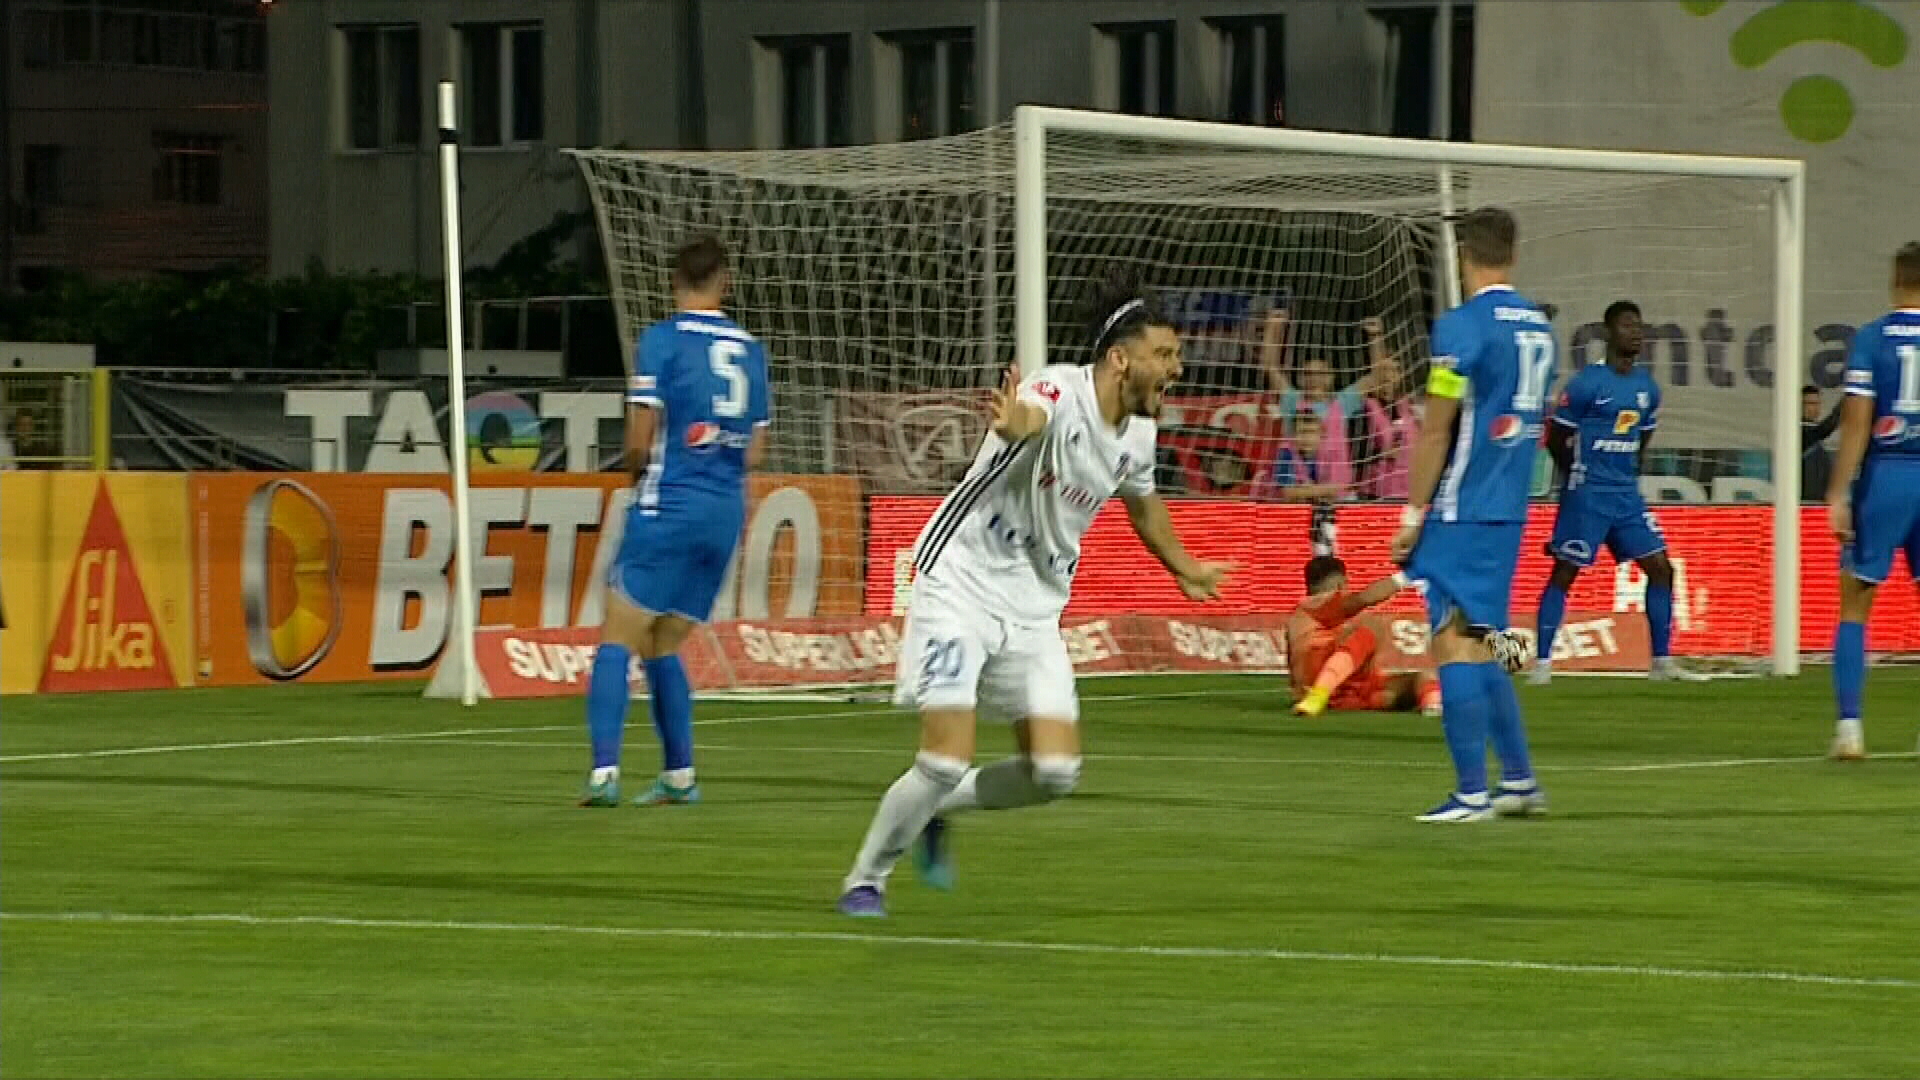 FC Botoșani - Farul Constanța 1-0, ACUM, pe Digi Sport 1. Mihai Roman deschide scorul cu un gol superb